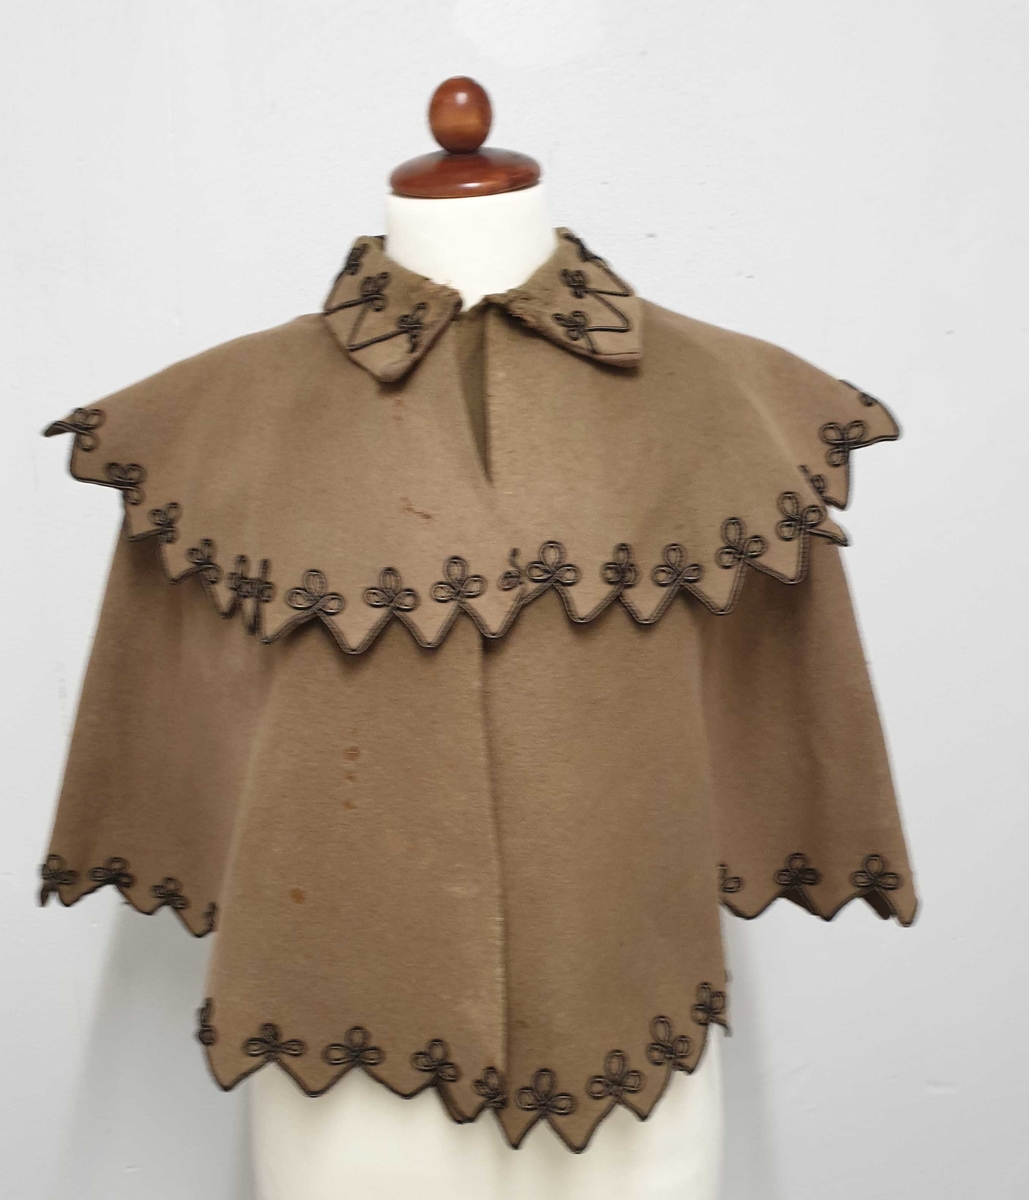 Brun cape av ullfilt, med lissebroderi langs kantene nederst, på kragen og langs pyntekragen over skuldrene.